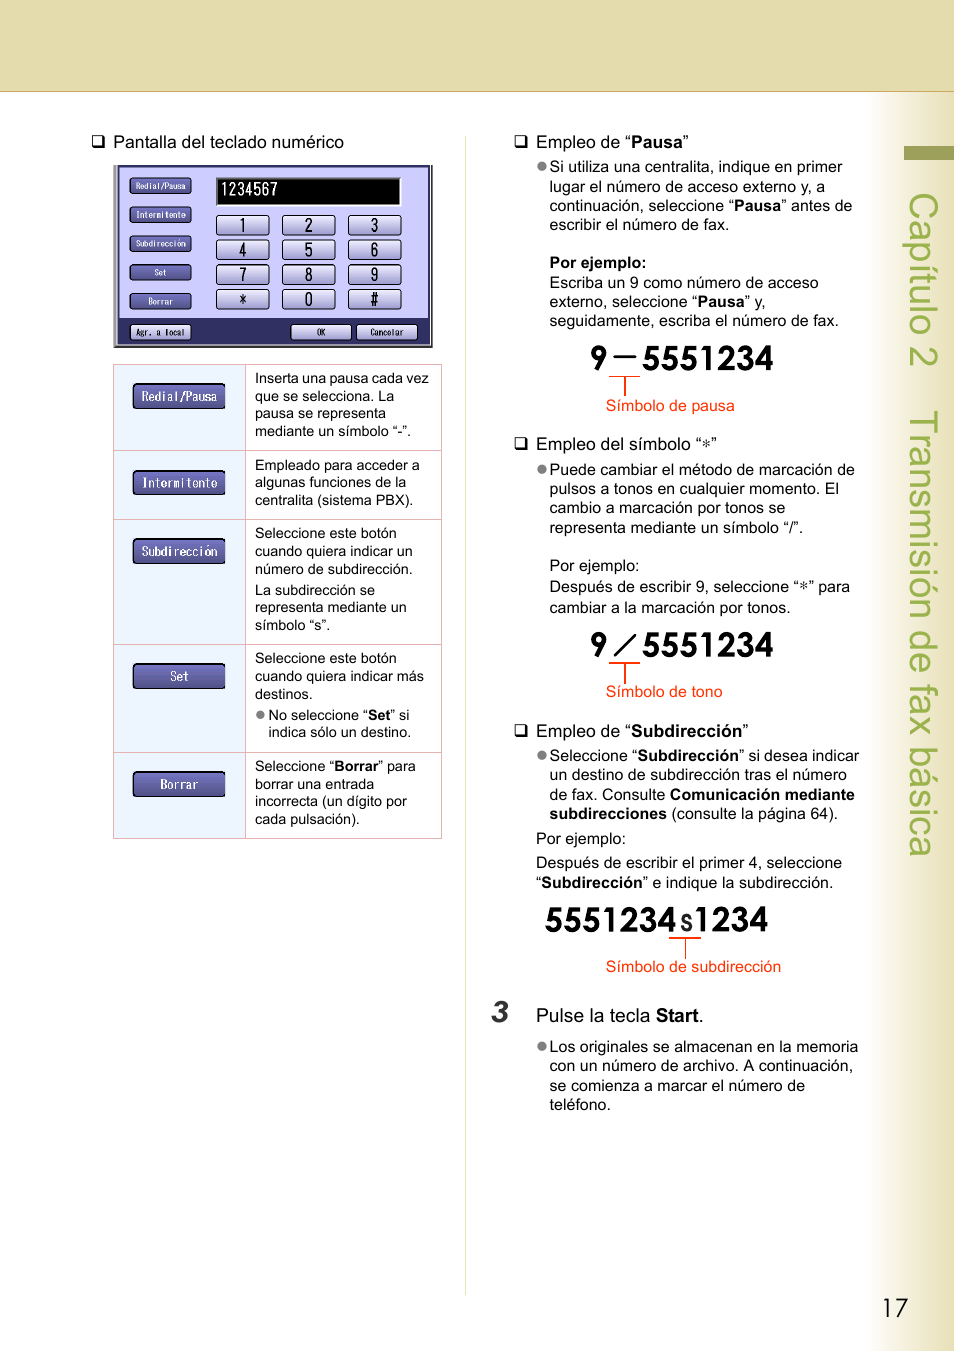 Capítulo 2 transmisión de fax básica | Panasonic DPC322 Manual del usuario | Página 17 / 218